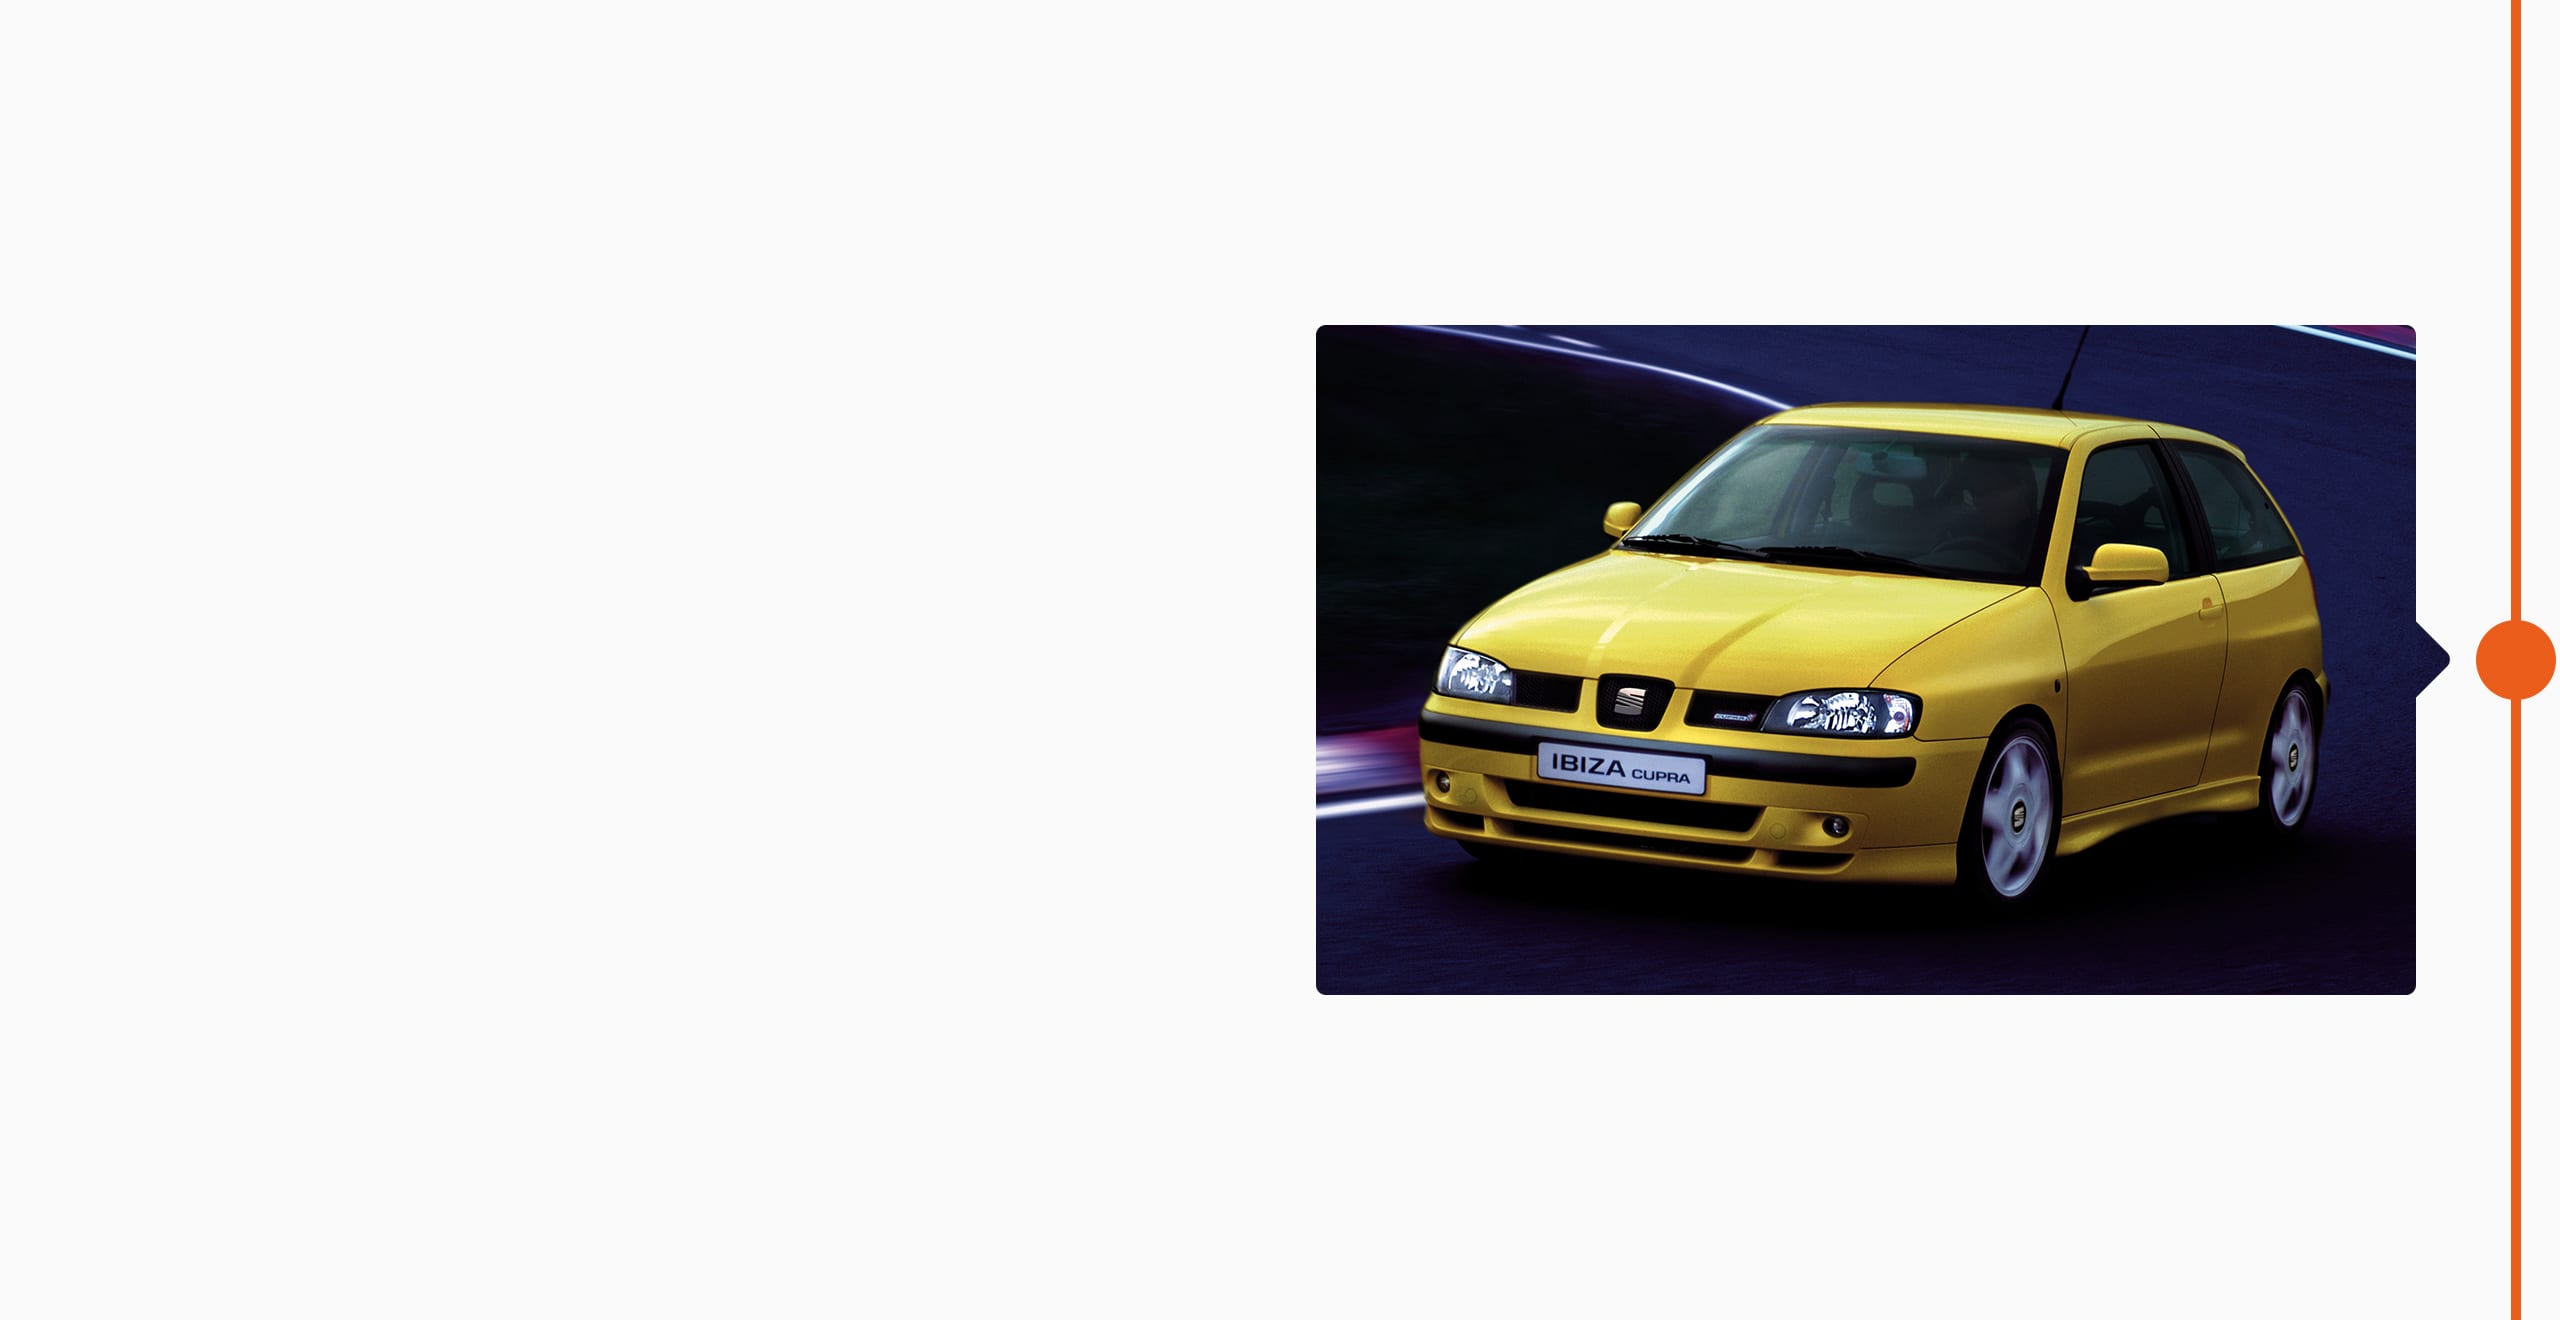 La storia del marchio SEAT: 1996 - Il campionato mondiale di rally FIA,la sportiva SEAT Ibiza Kit Car, il marchio CUPRA